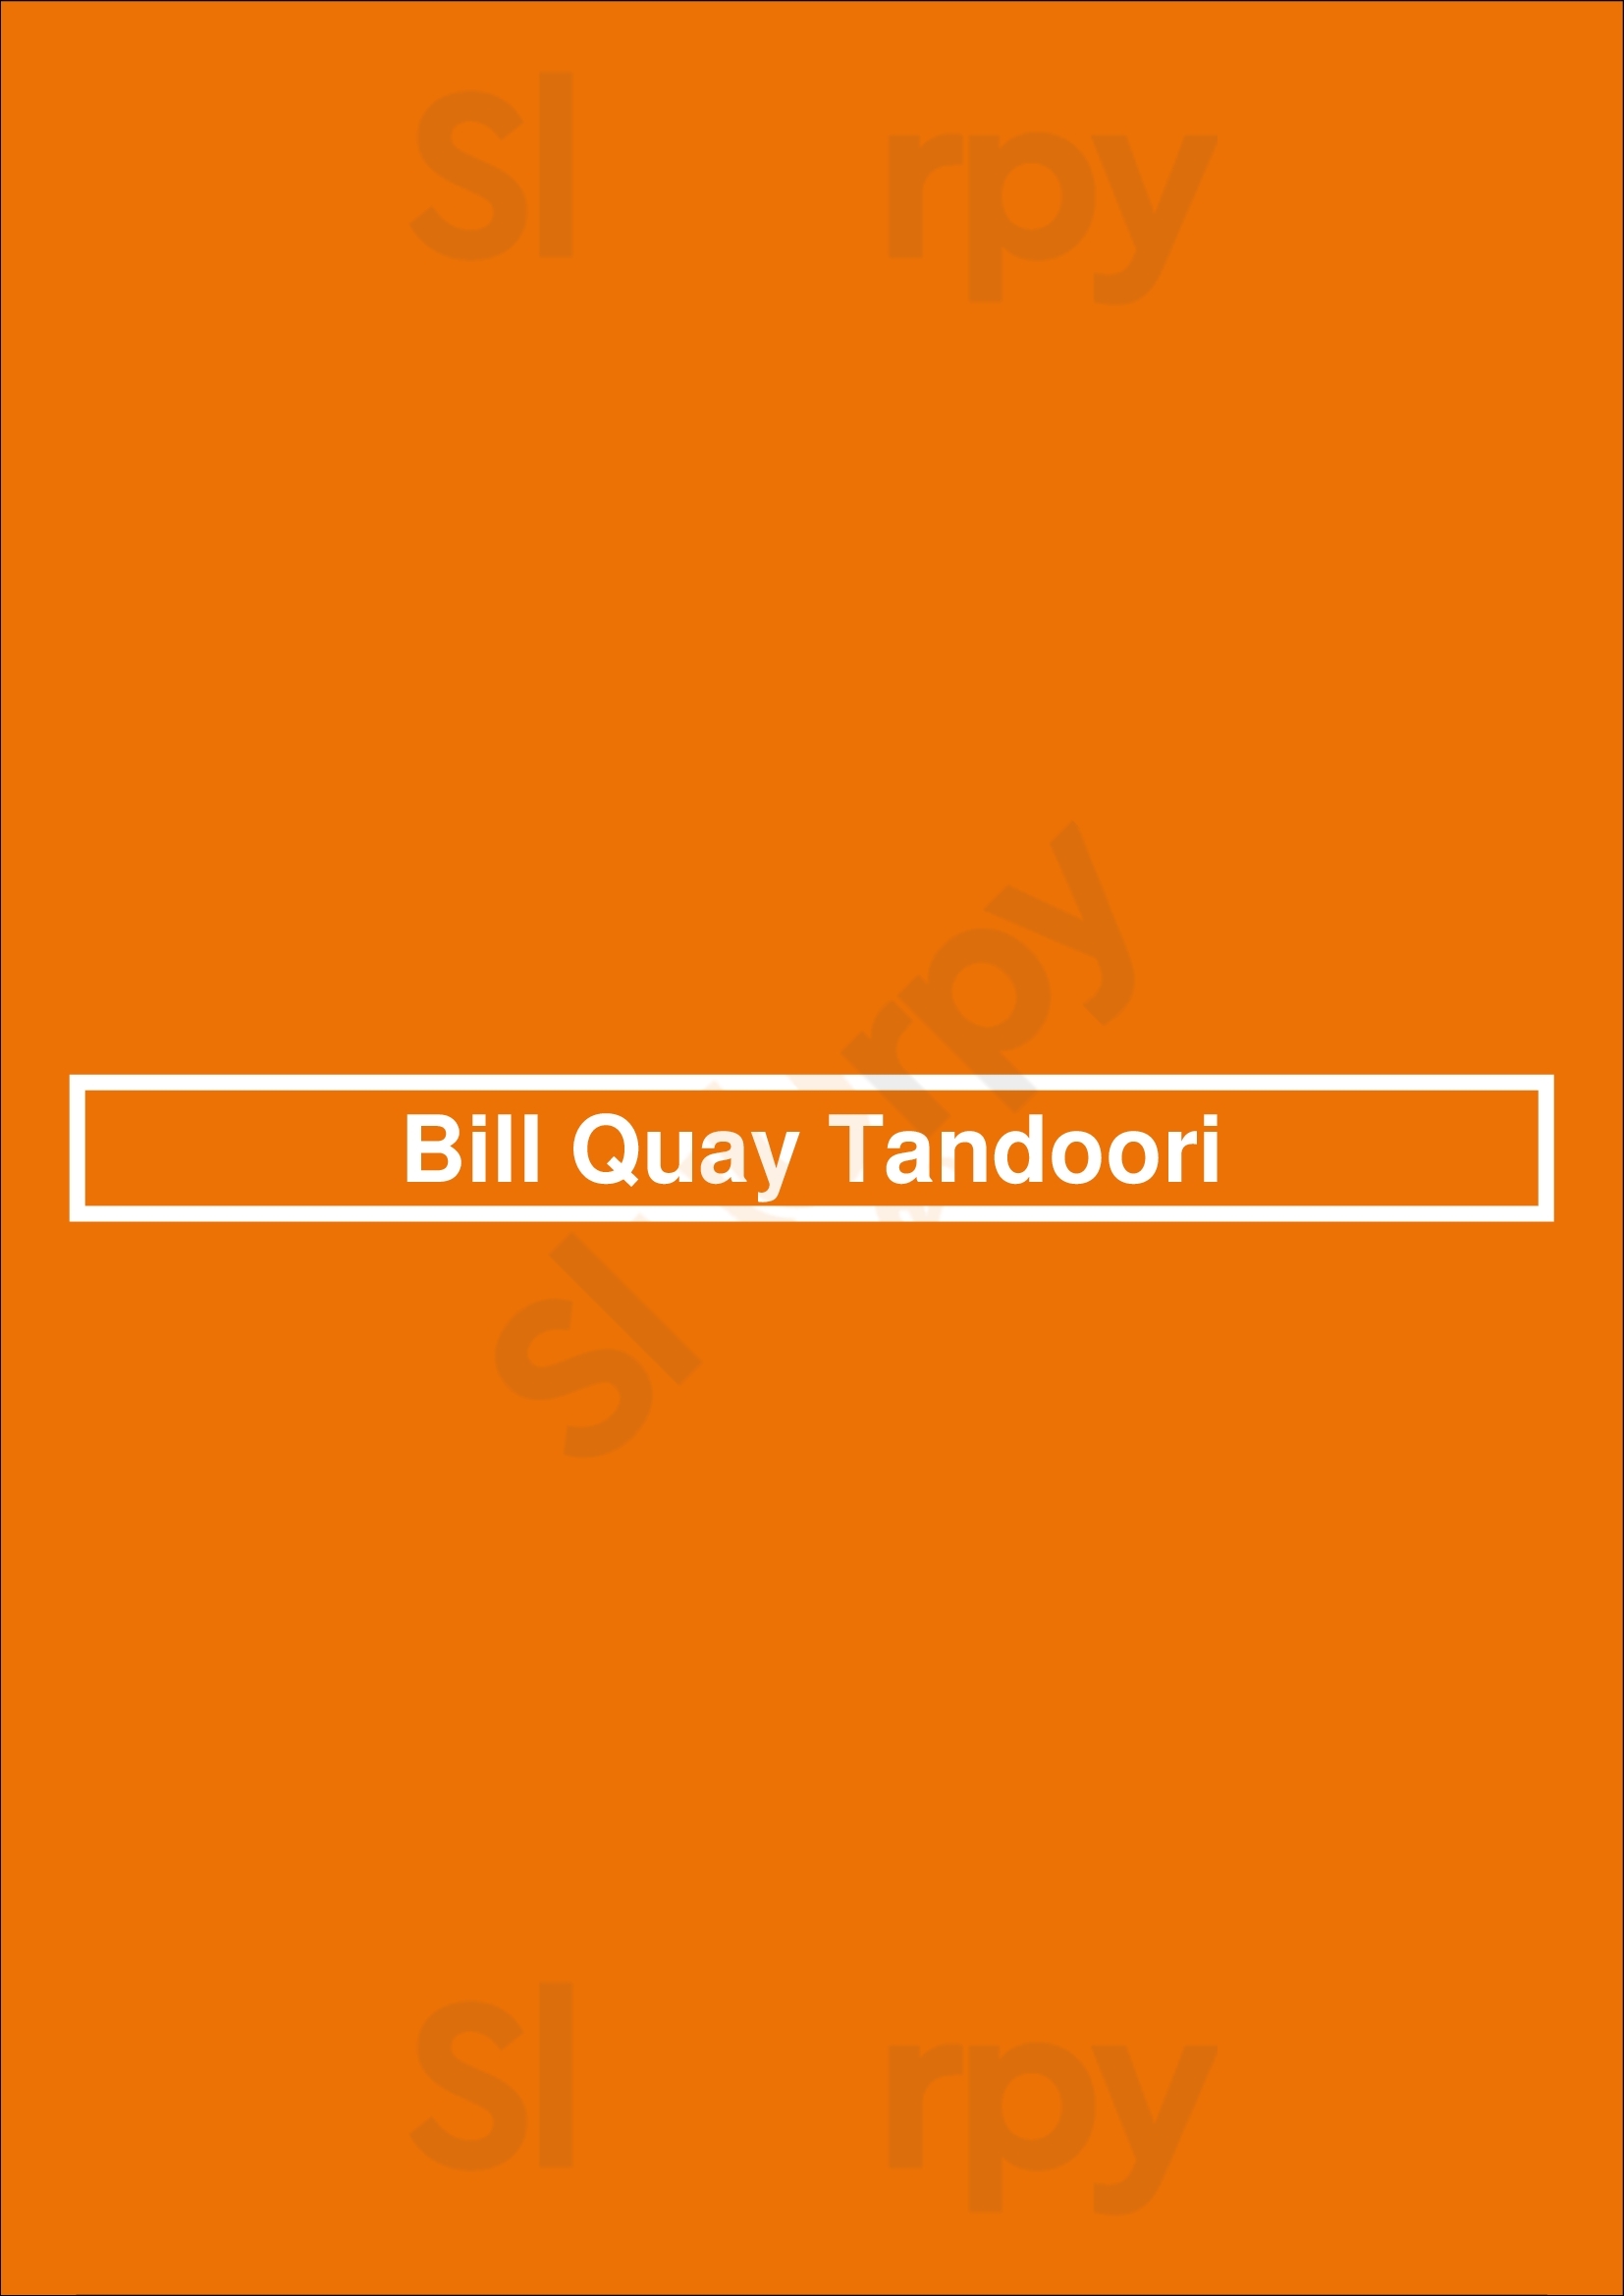 Bill Quay Tandoori Gateshead Menu - 1